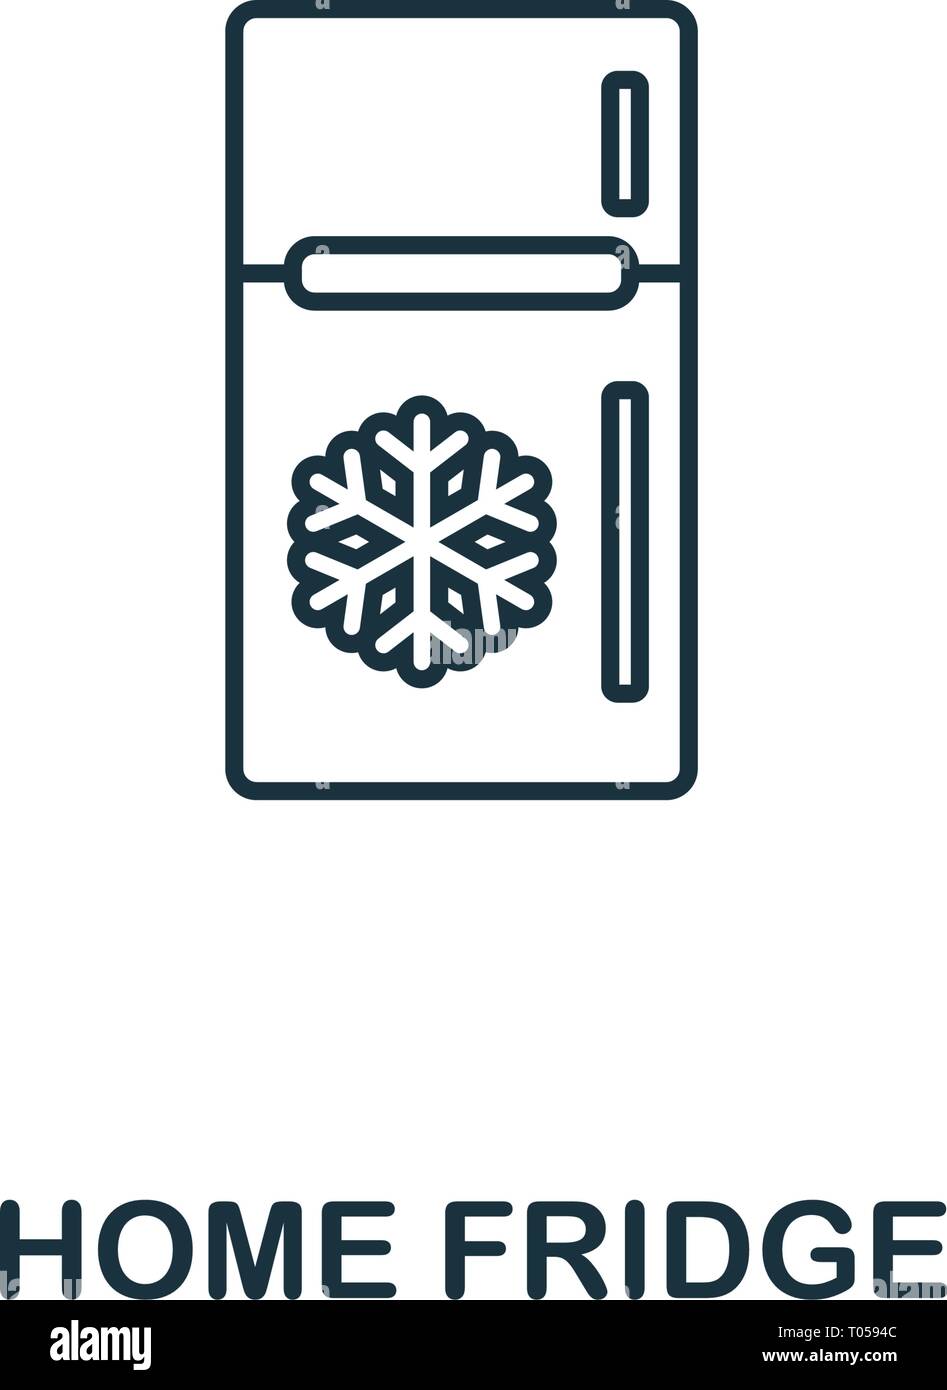 Home Kühlschrank Symbol. Dünne Design von Haushalt icons Collection.  Creativehome kühlschrank Symbol für Web Design, Anwendungen, Software,  drucken Stock-Vektorgrafik - Alamy